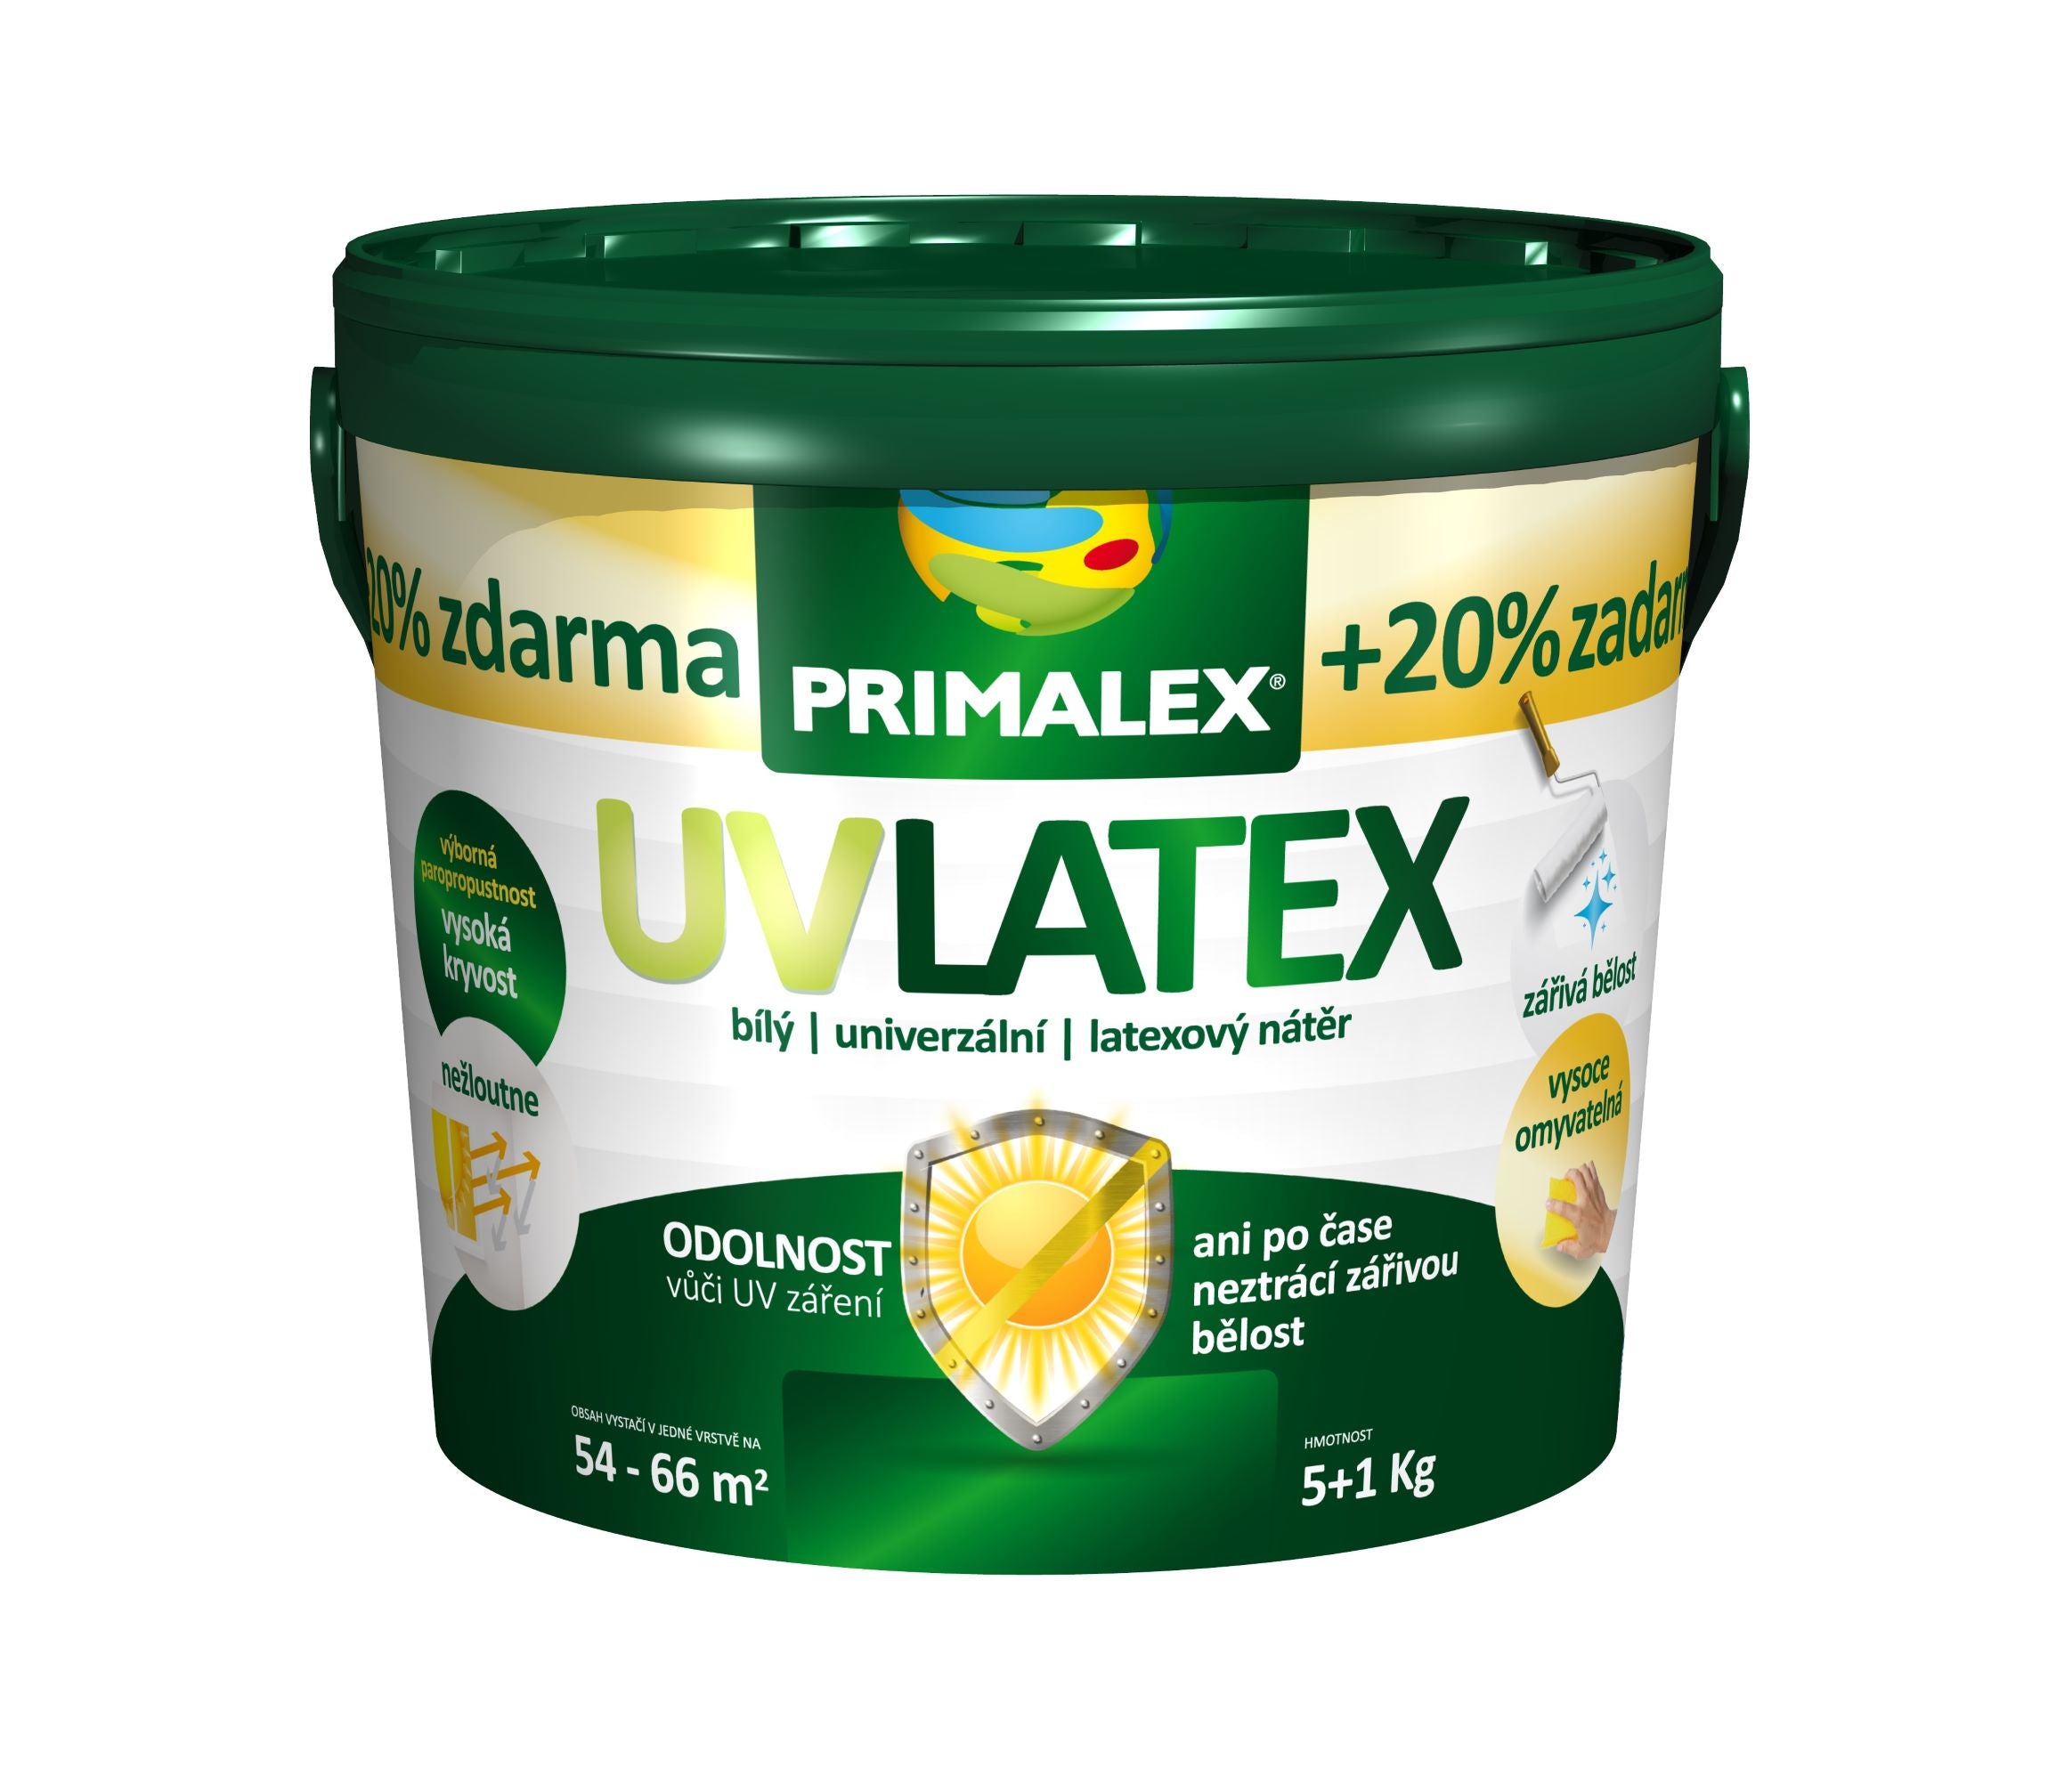 PRIMALEX UV LATEX biely univerzálny latexový náter